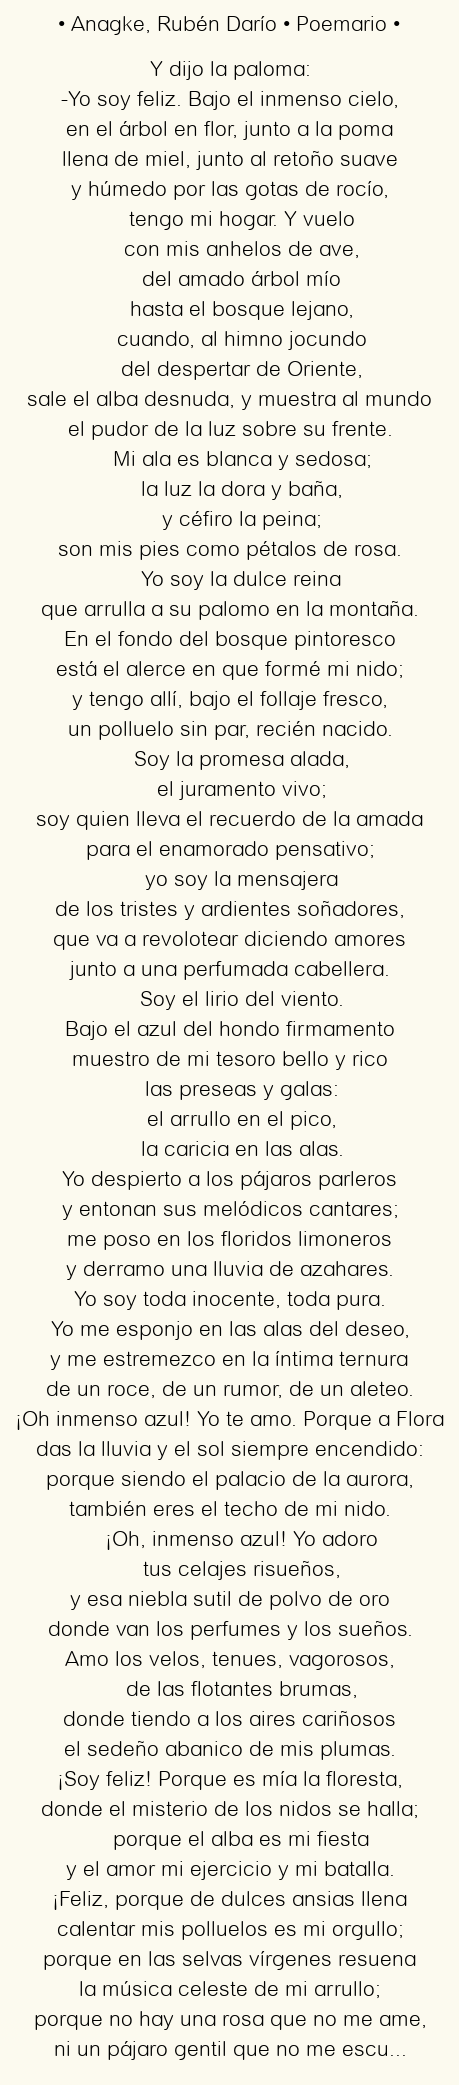 Imagen con el poema Anagke, por Rubén Darío